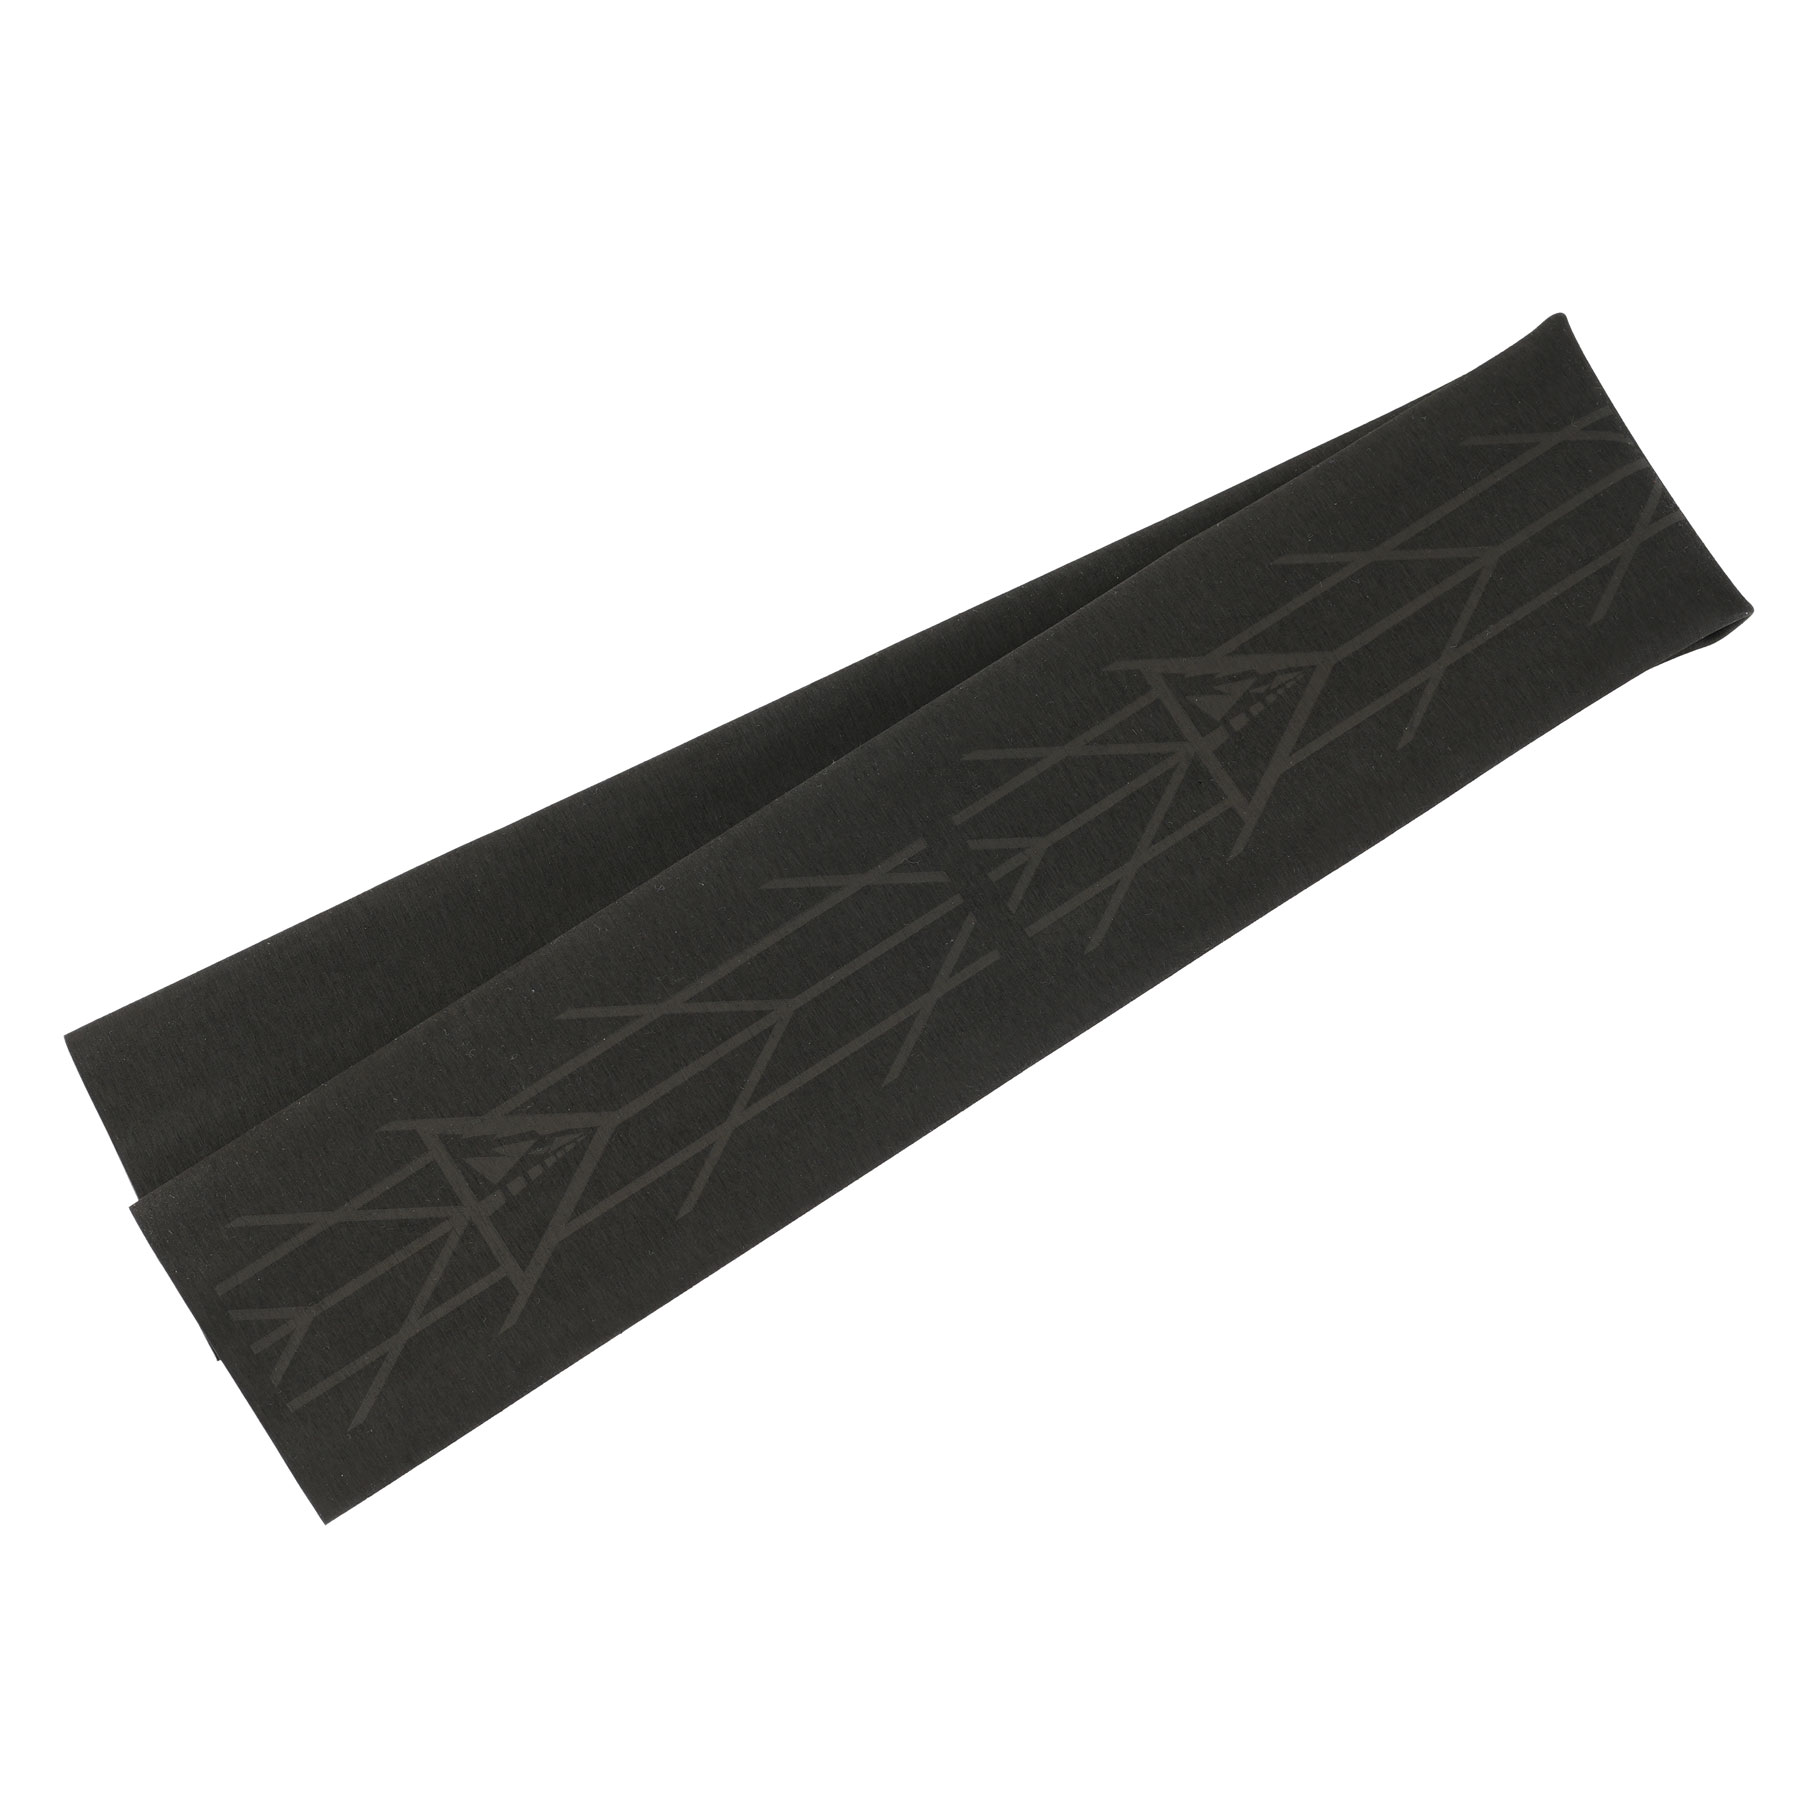 Produktbild von Profile Design Heat Shrink Wrap Lenkerband - schwarz